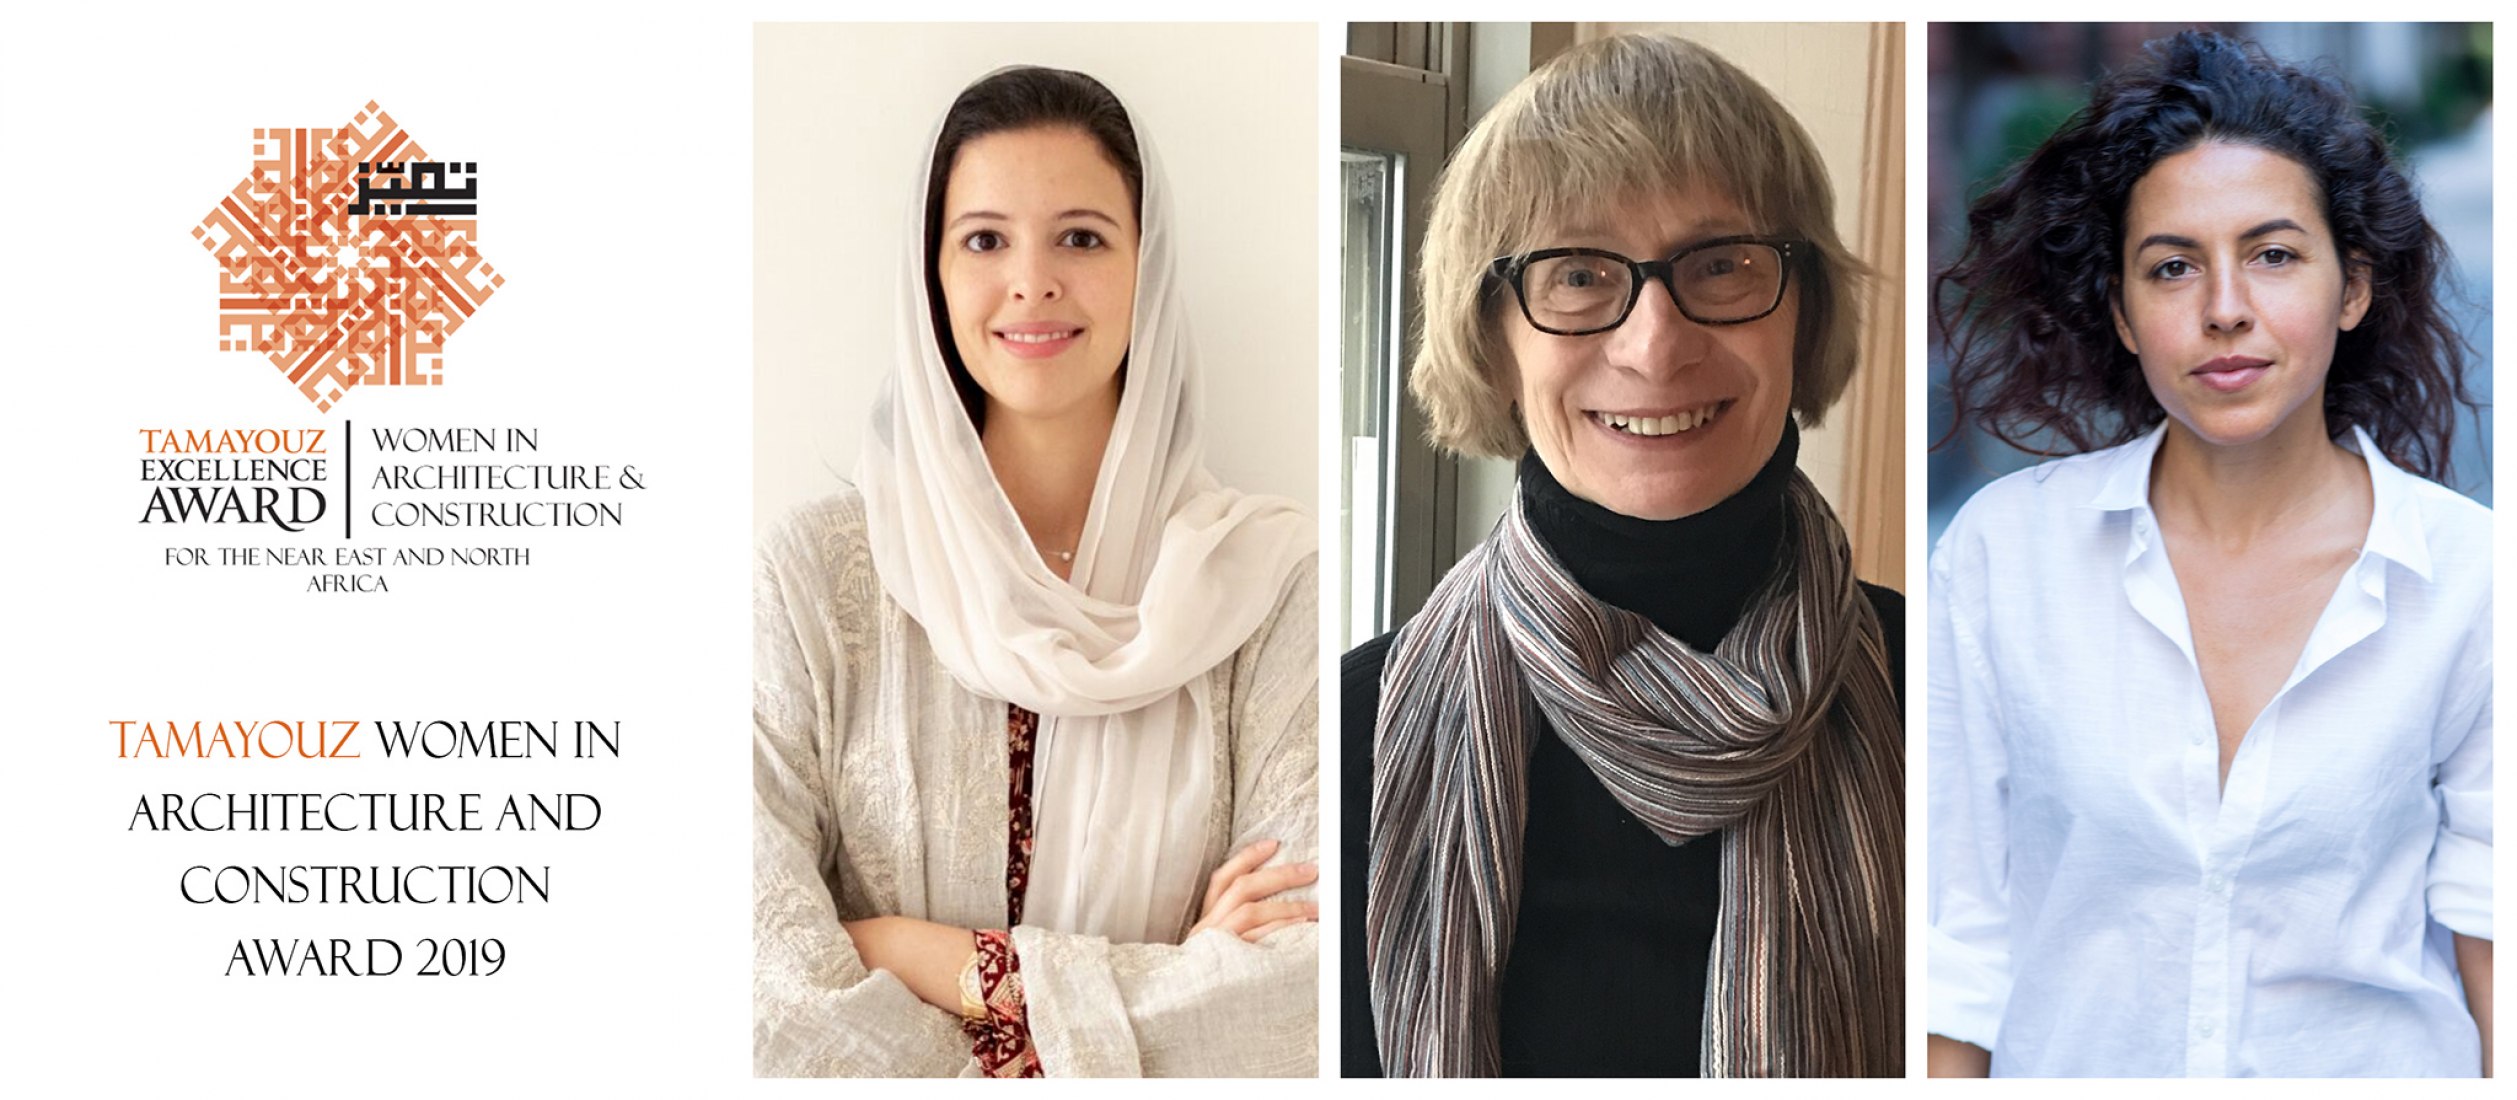 El Premio a la Excelencia Tamayouz reconoce a Dana AlAmri, Dr. Zeynep Celik y Shahira Fahmy como ganadoras del Premio a la Mujer en Arquitectura y Construcción 2019